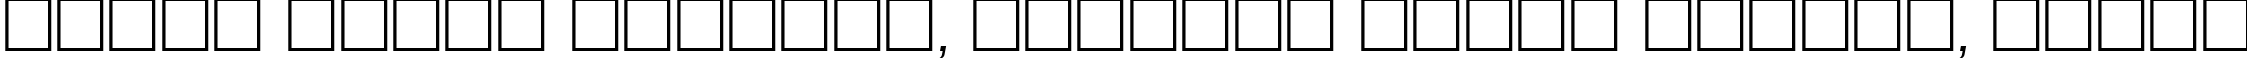 Пример написания шрифтом Europe_Ext Oblique текста на белорусском